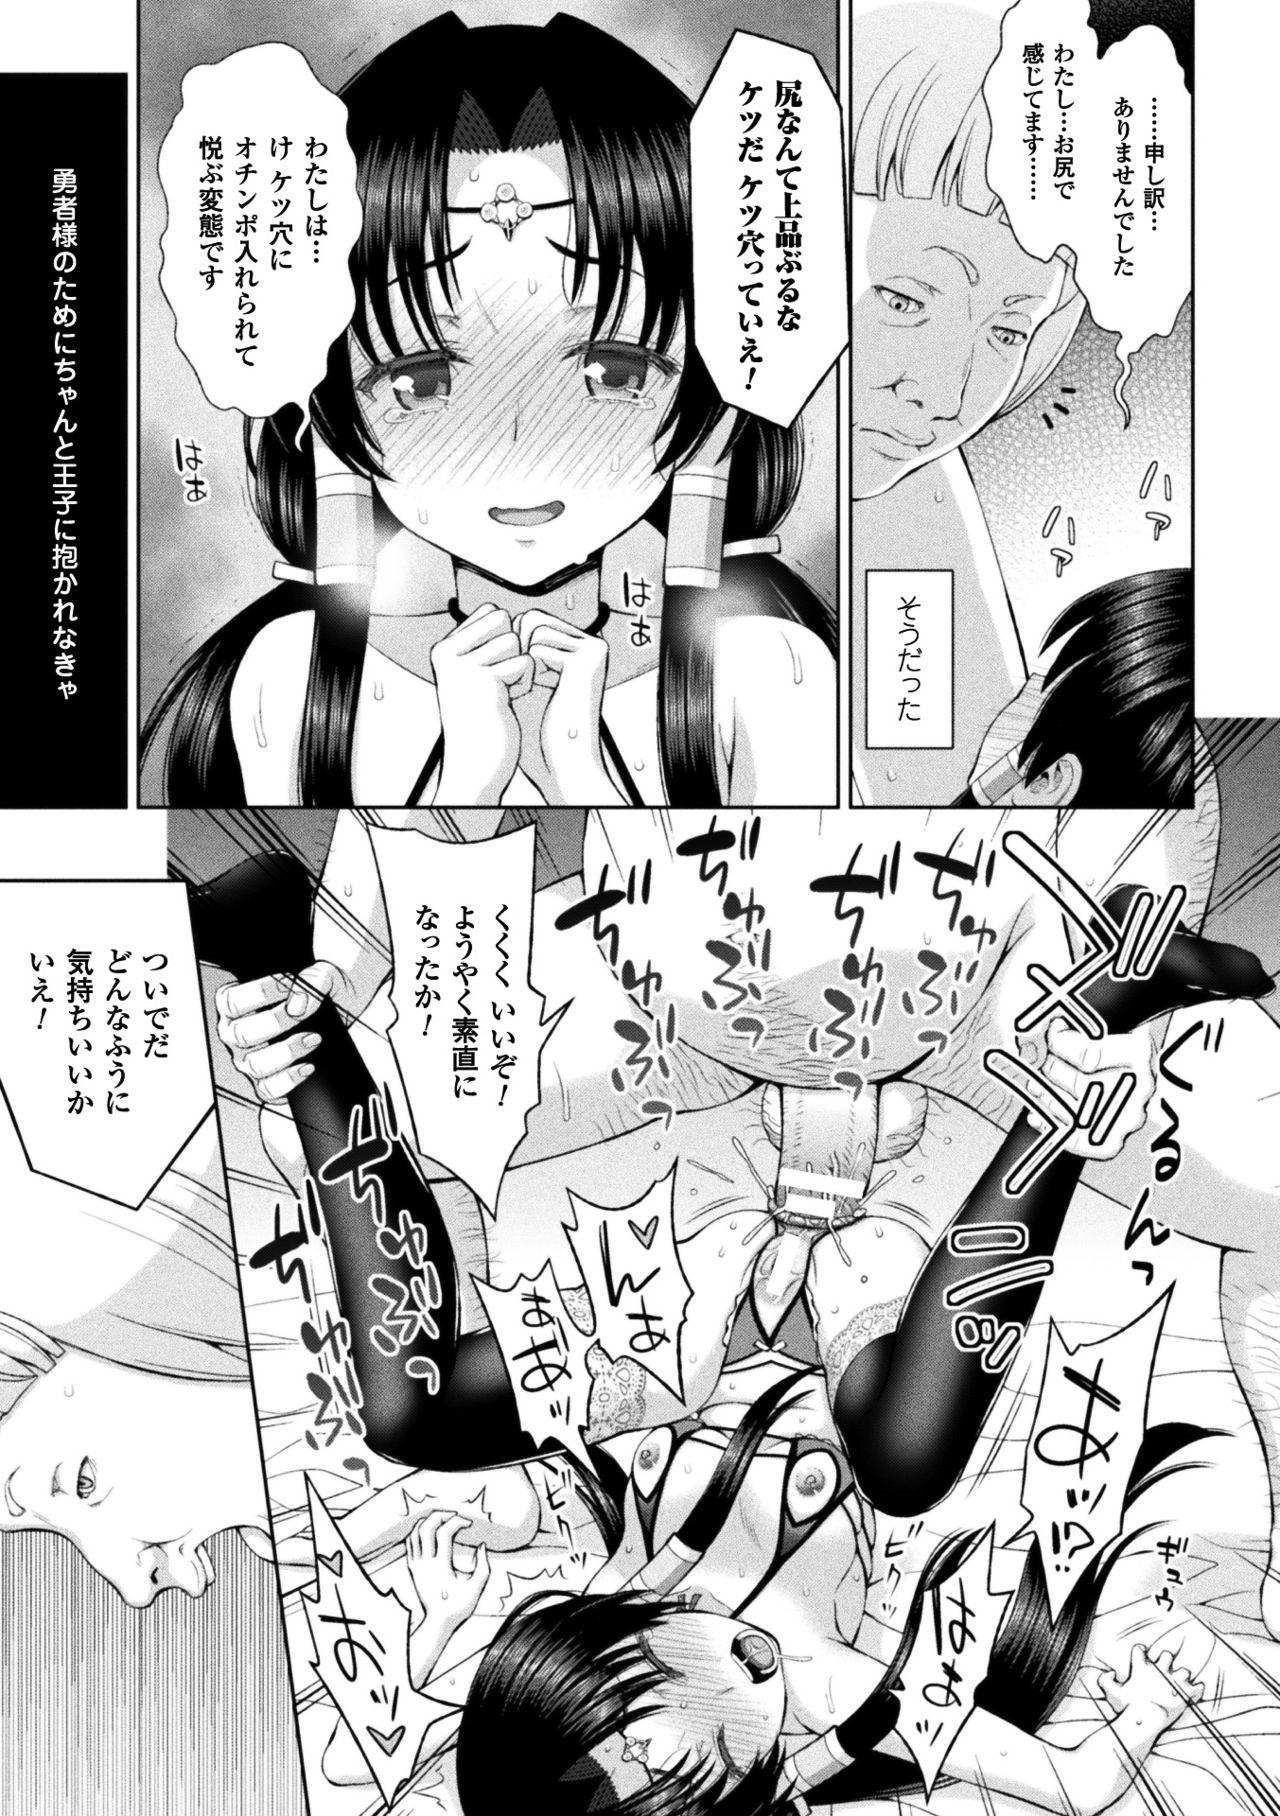 Seigi no Heroine Kangoku File Vol. 14 48